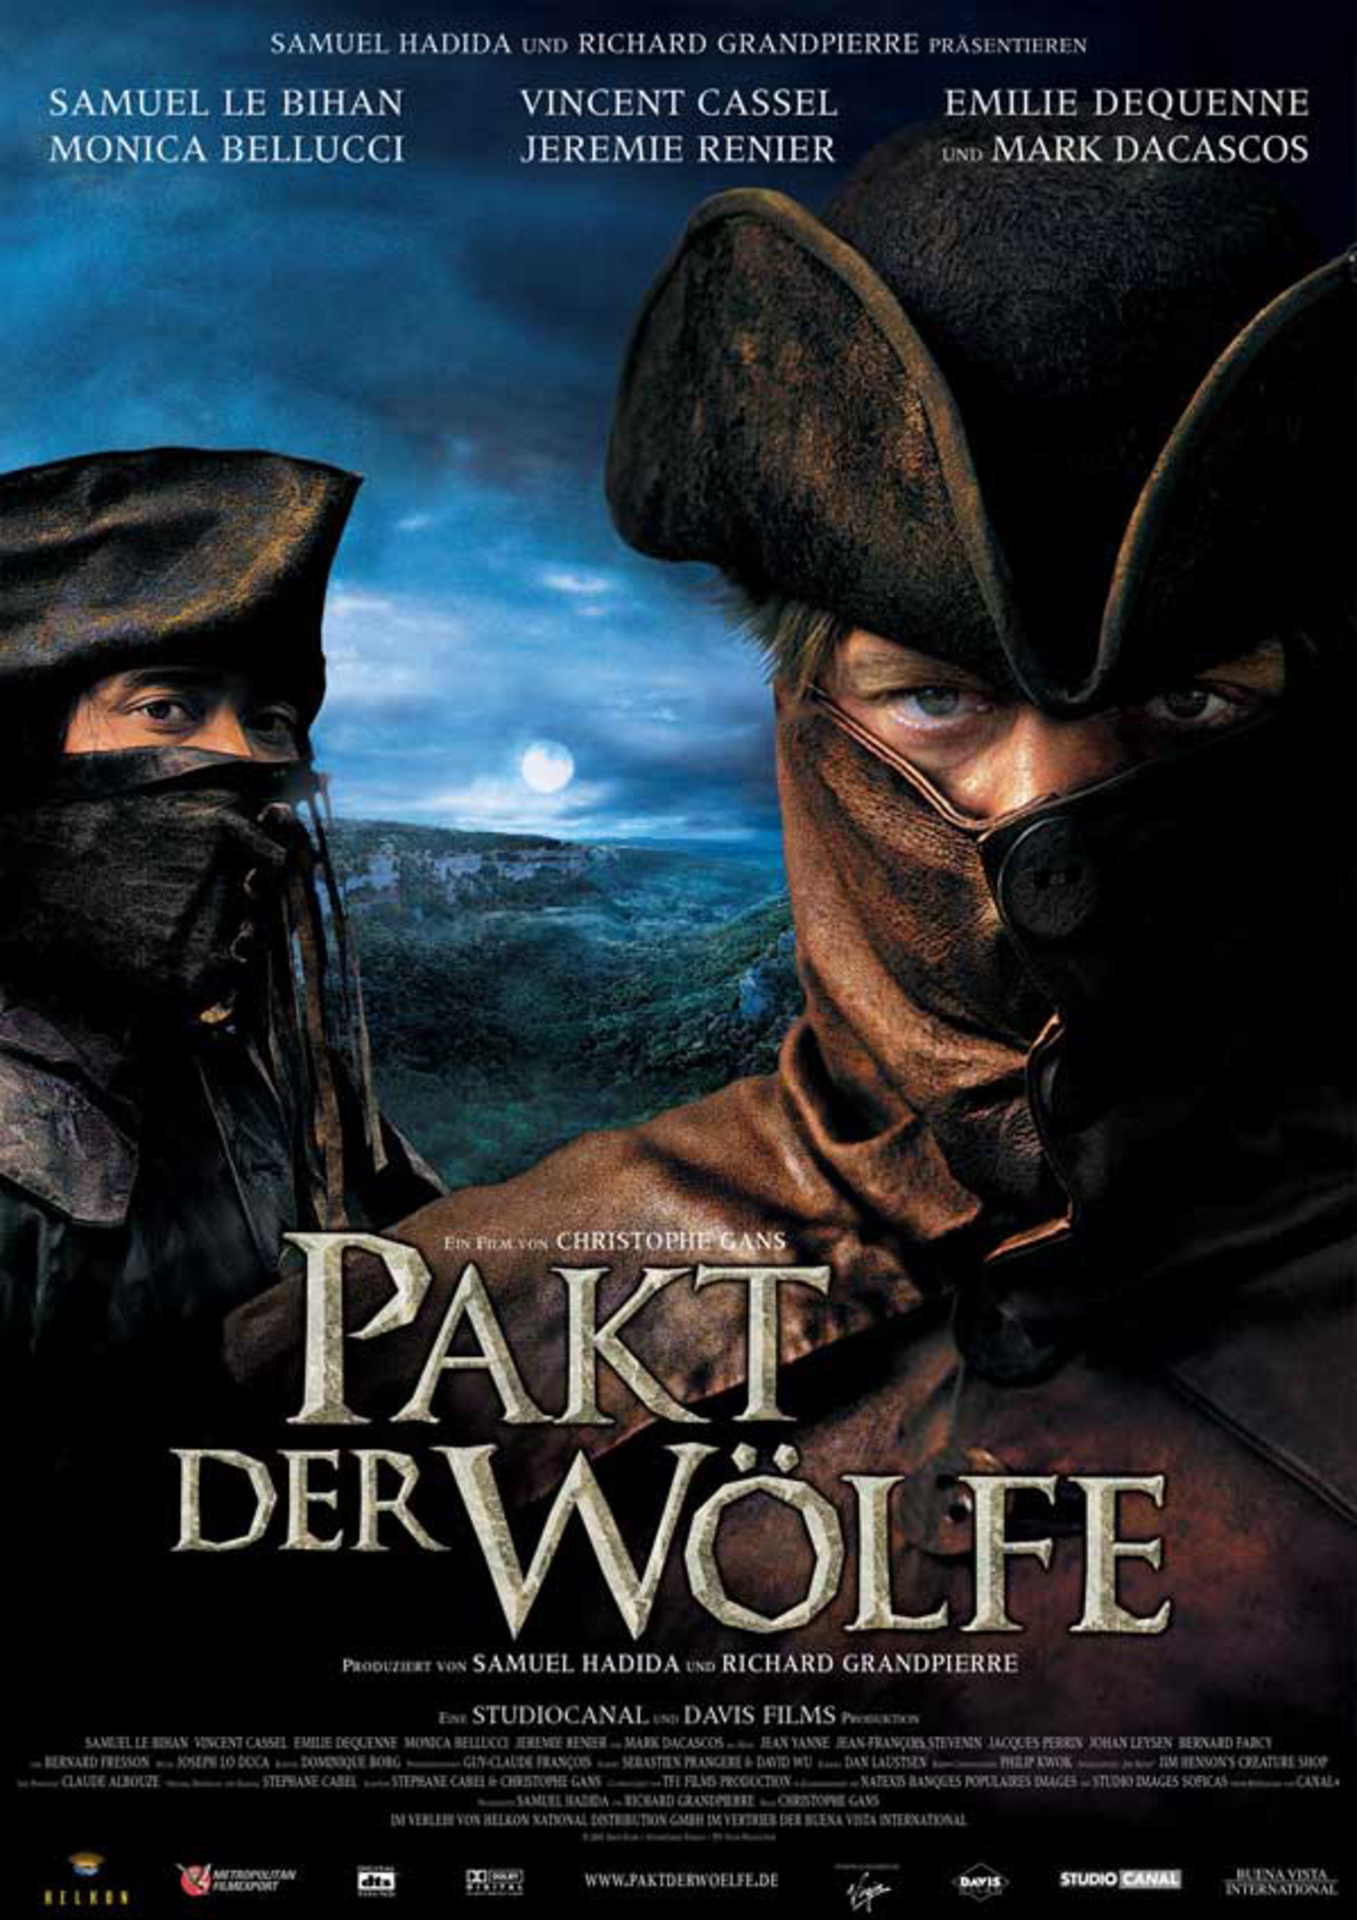 Pakt der Wölfe (Best of Cinema)